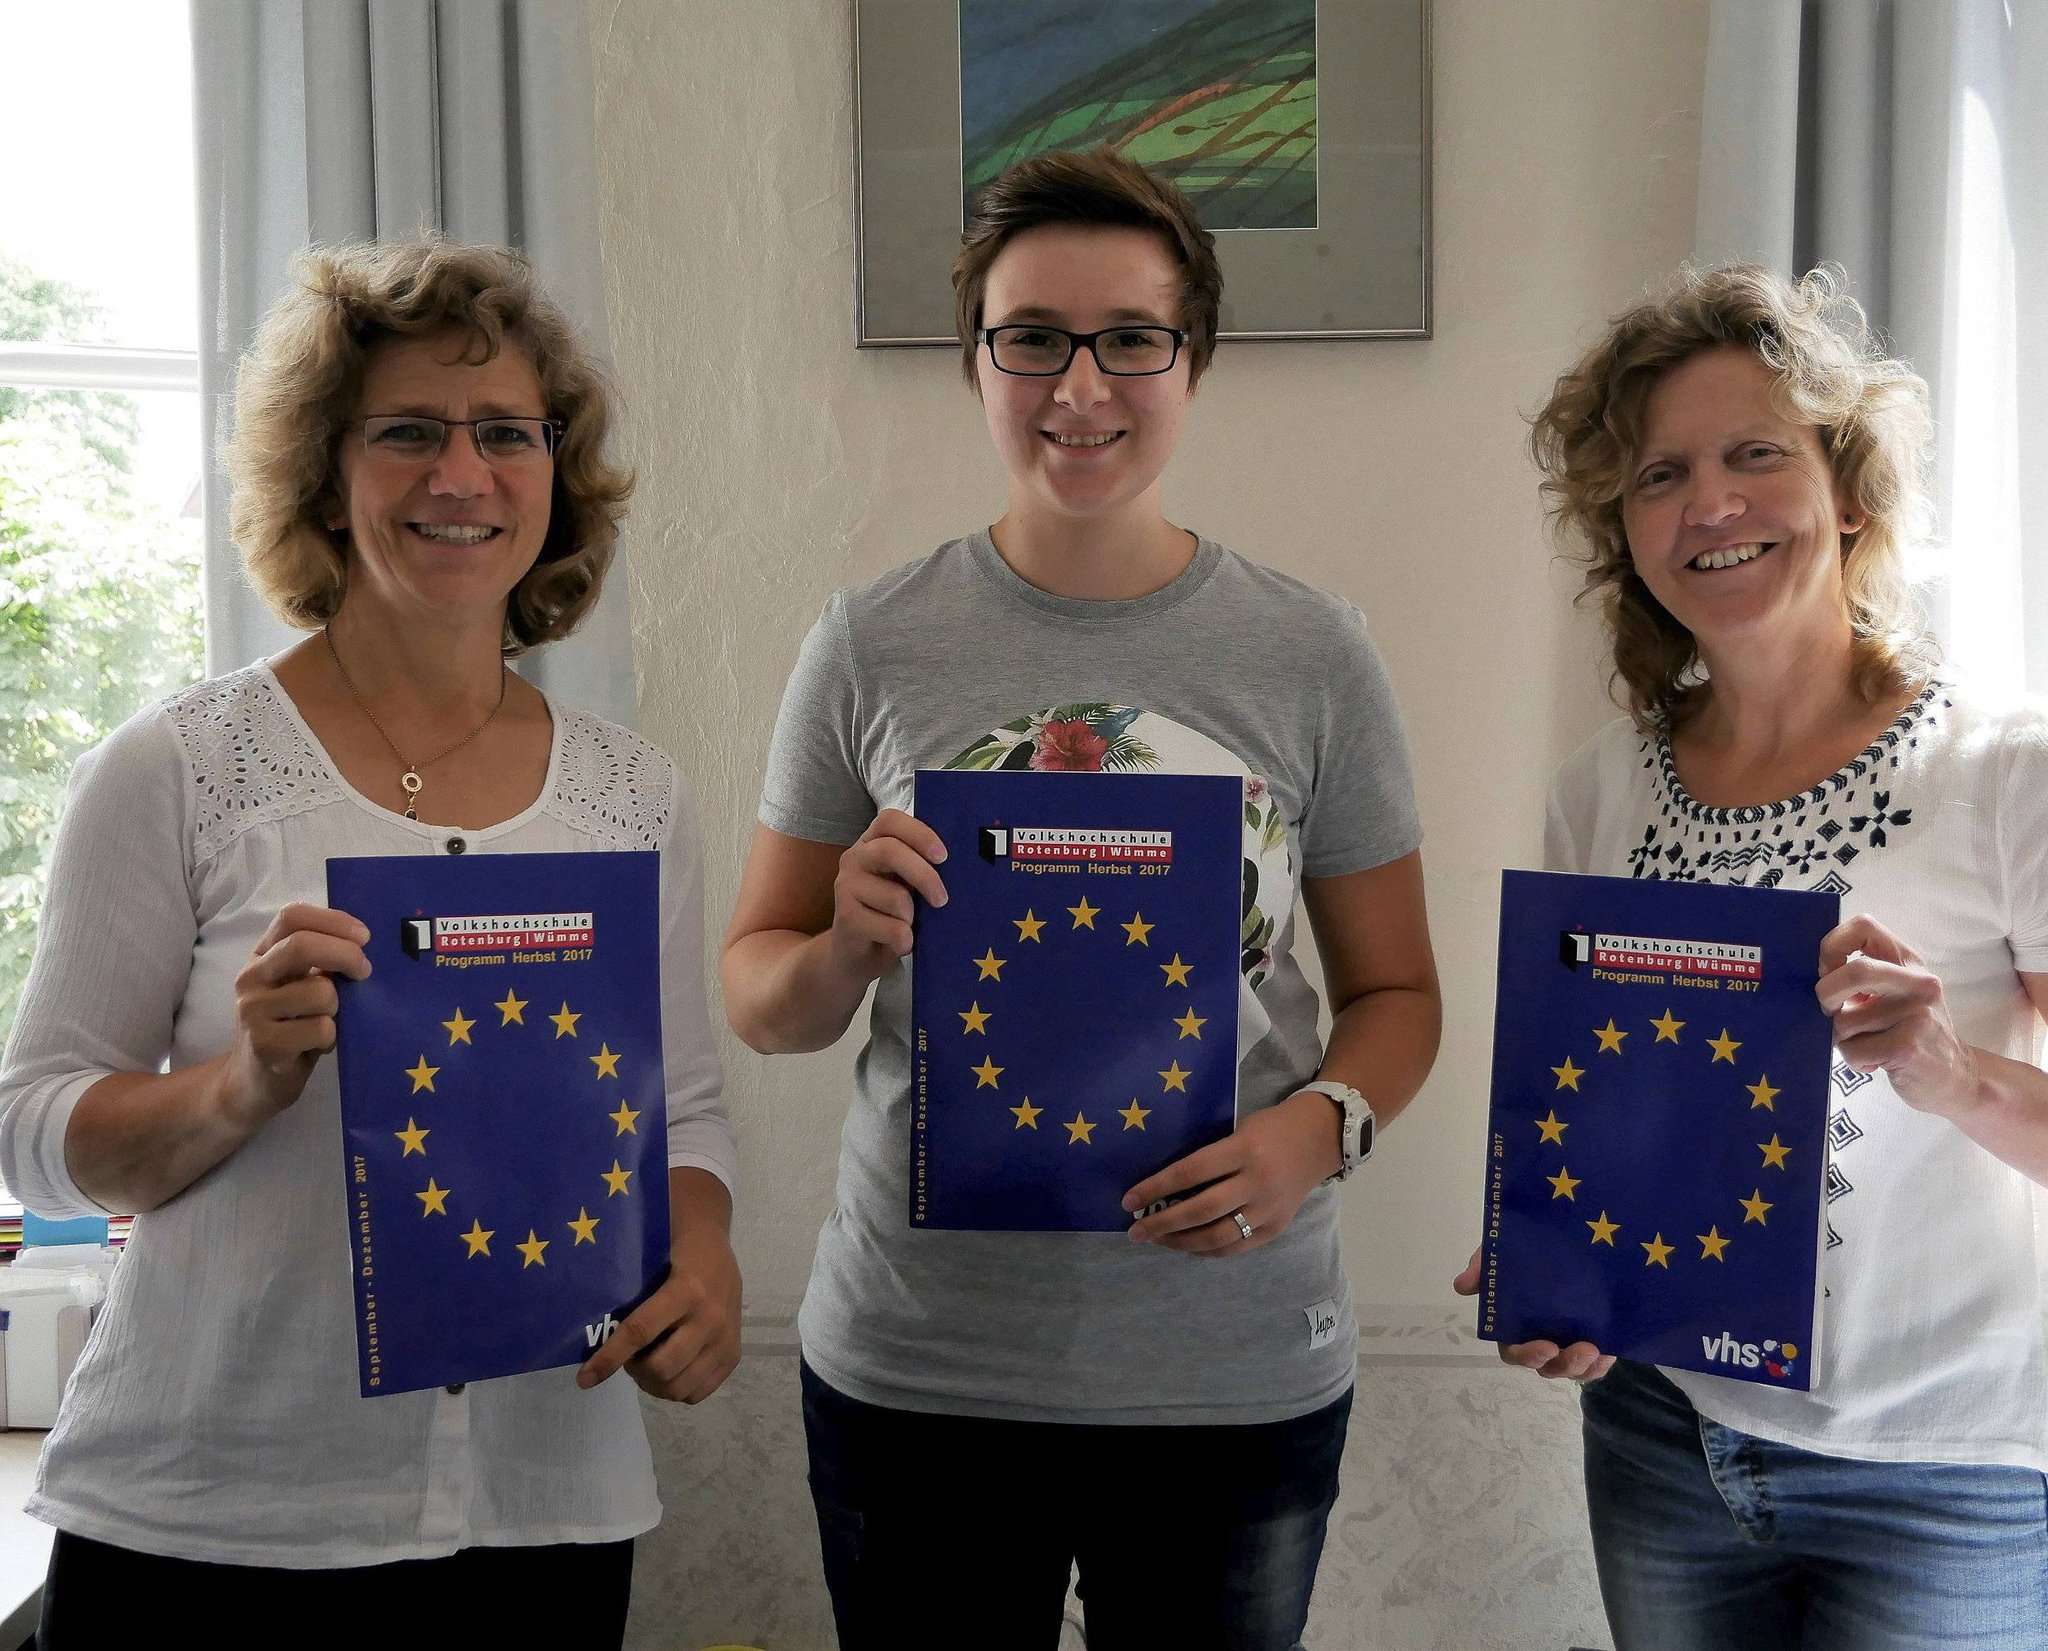 Birgit Lynge (von links), Jennifer Stührmann und Edith Jahnke stellen das neue VHS-Programm vor. Foto: Karen Bennecke